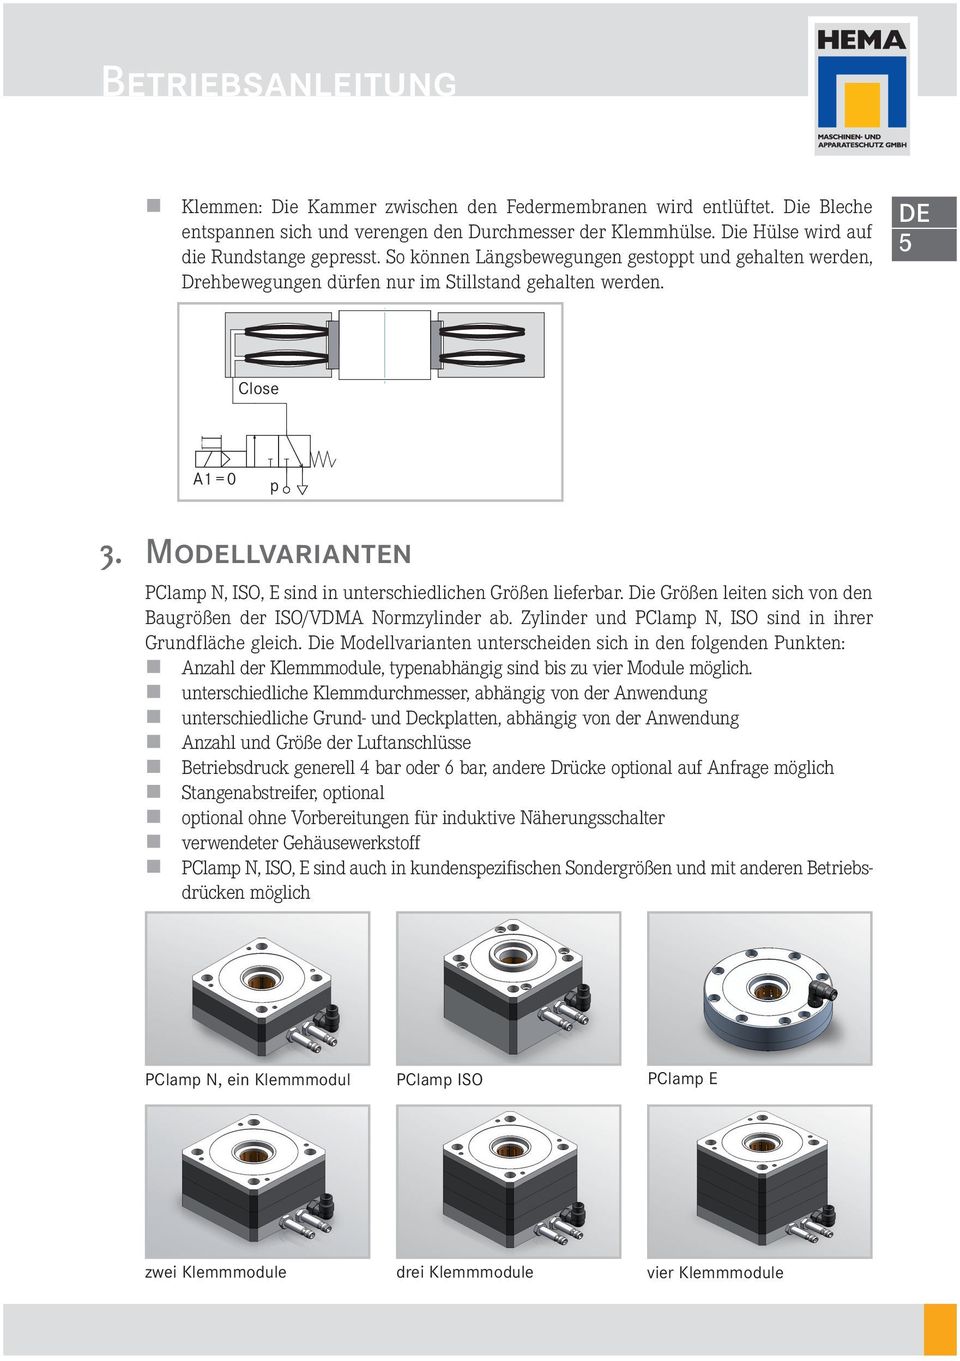 Modellvarianten PClamp N, ISO, E sind in unterschiedlichen Größen lieferbar. Die Größen leiten sich von den Baugrößen der ISO/VDM Normzylinder ab.